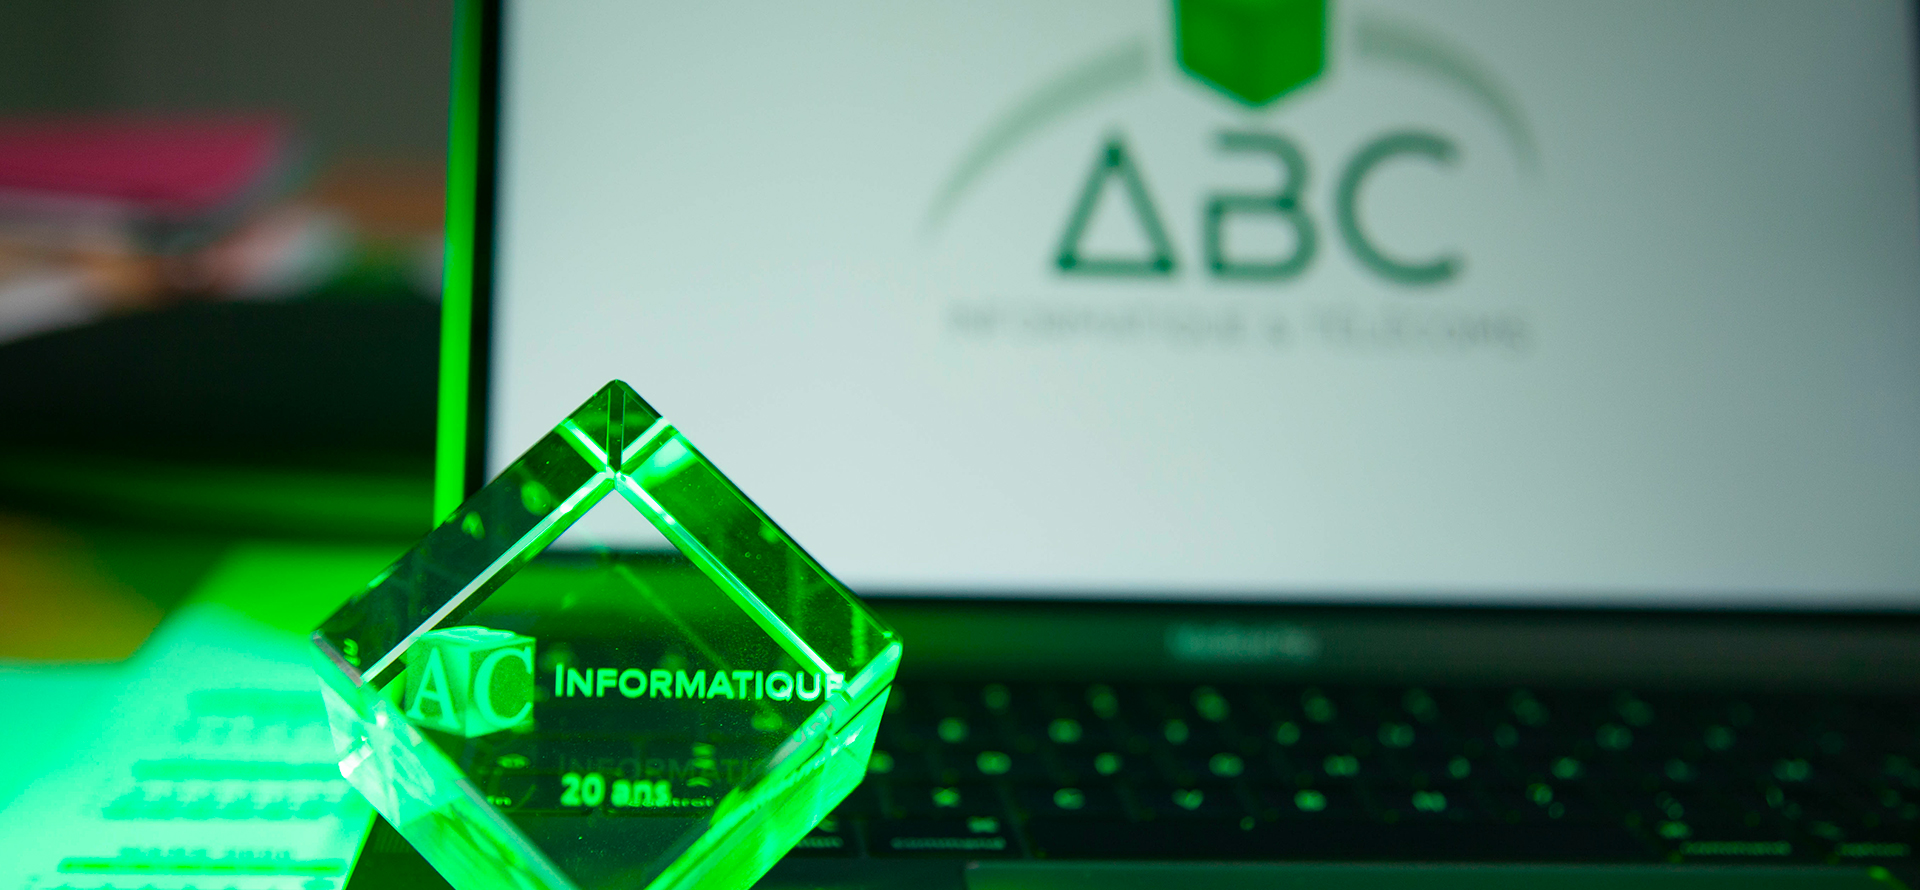 Abc Informatique